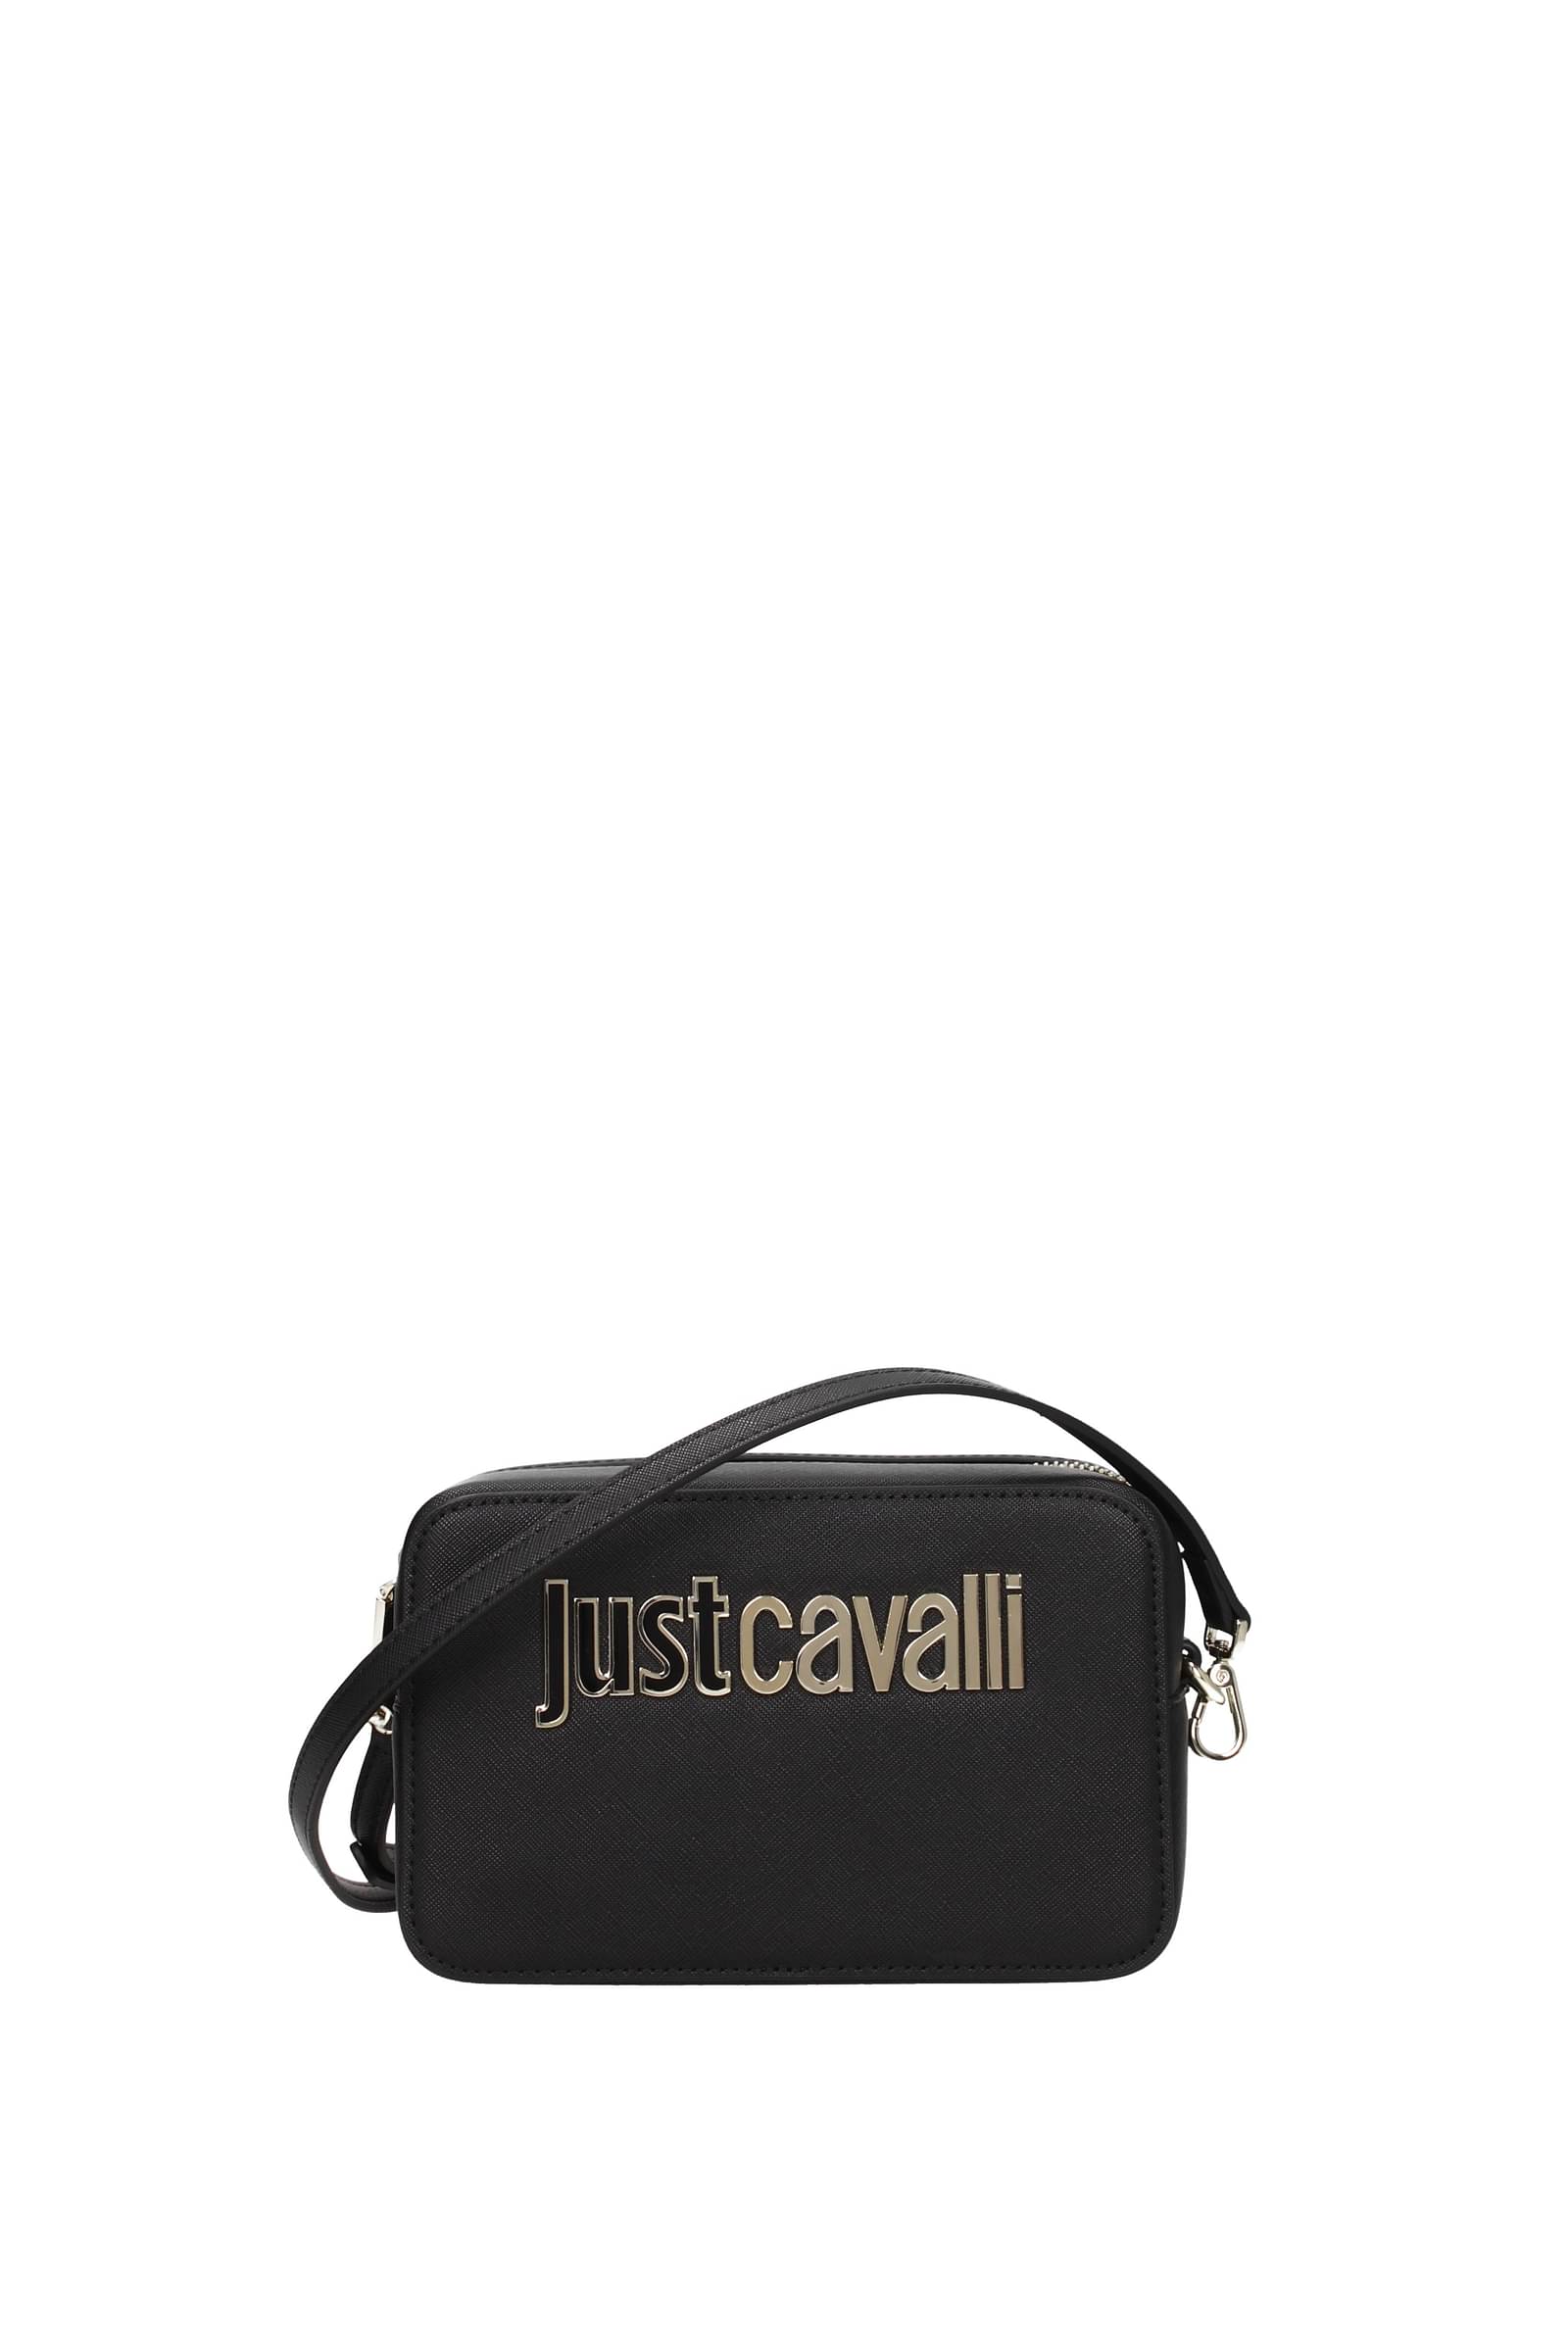 Just Cavalli Tiger Head Logo Plaque Quilted Shoulder Bag | eBay